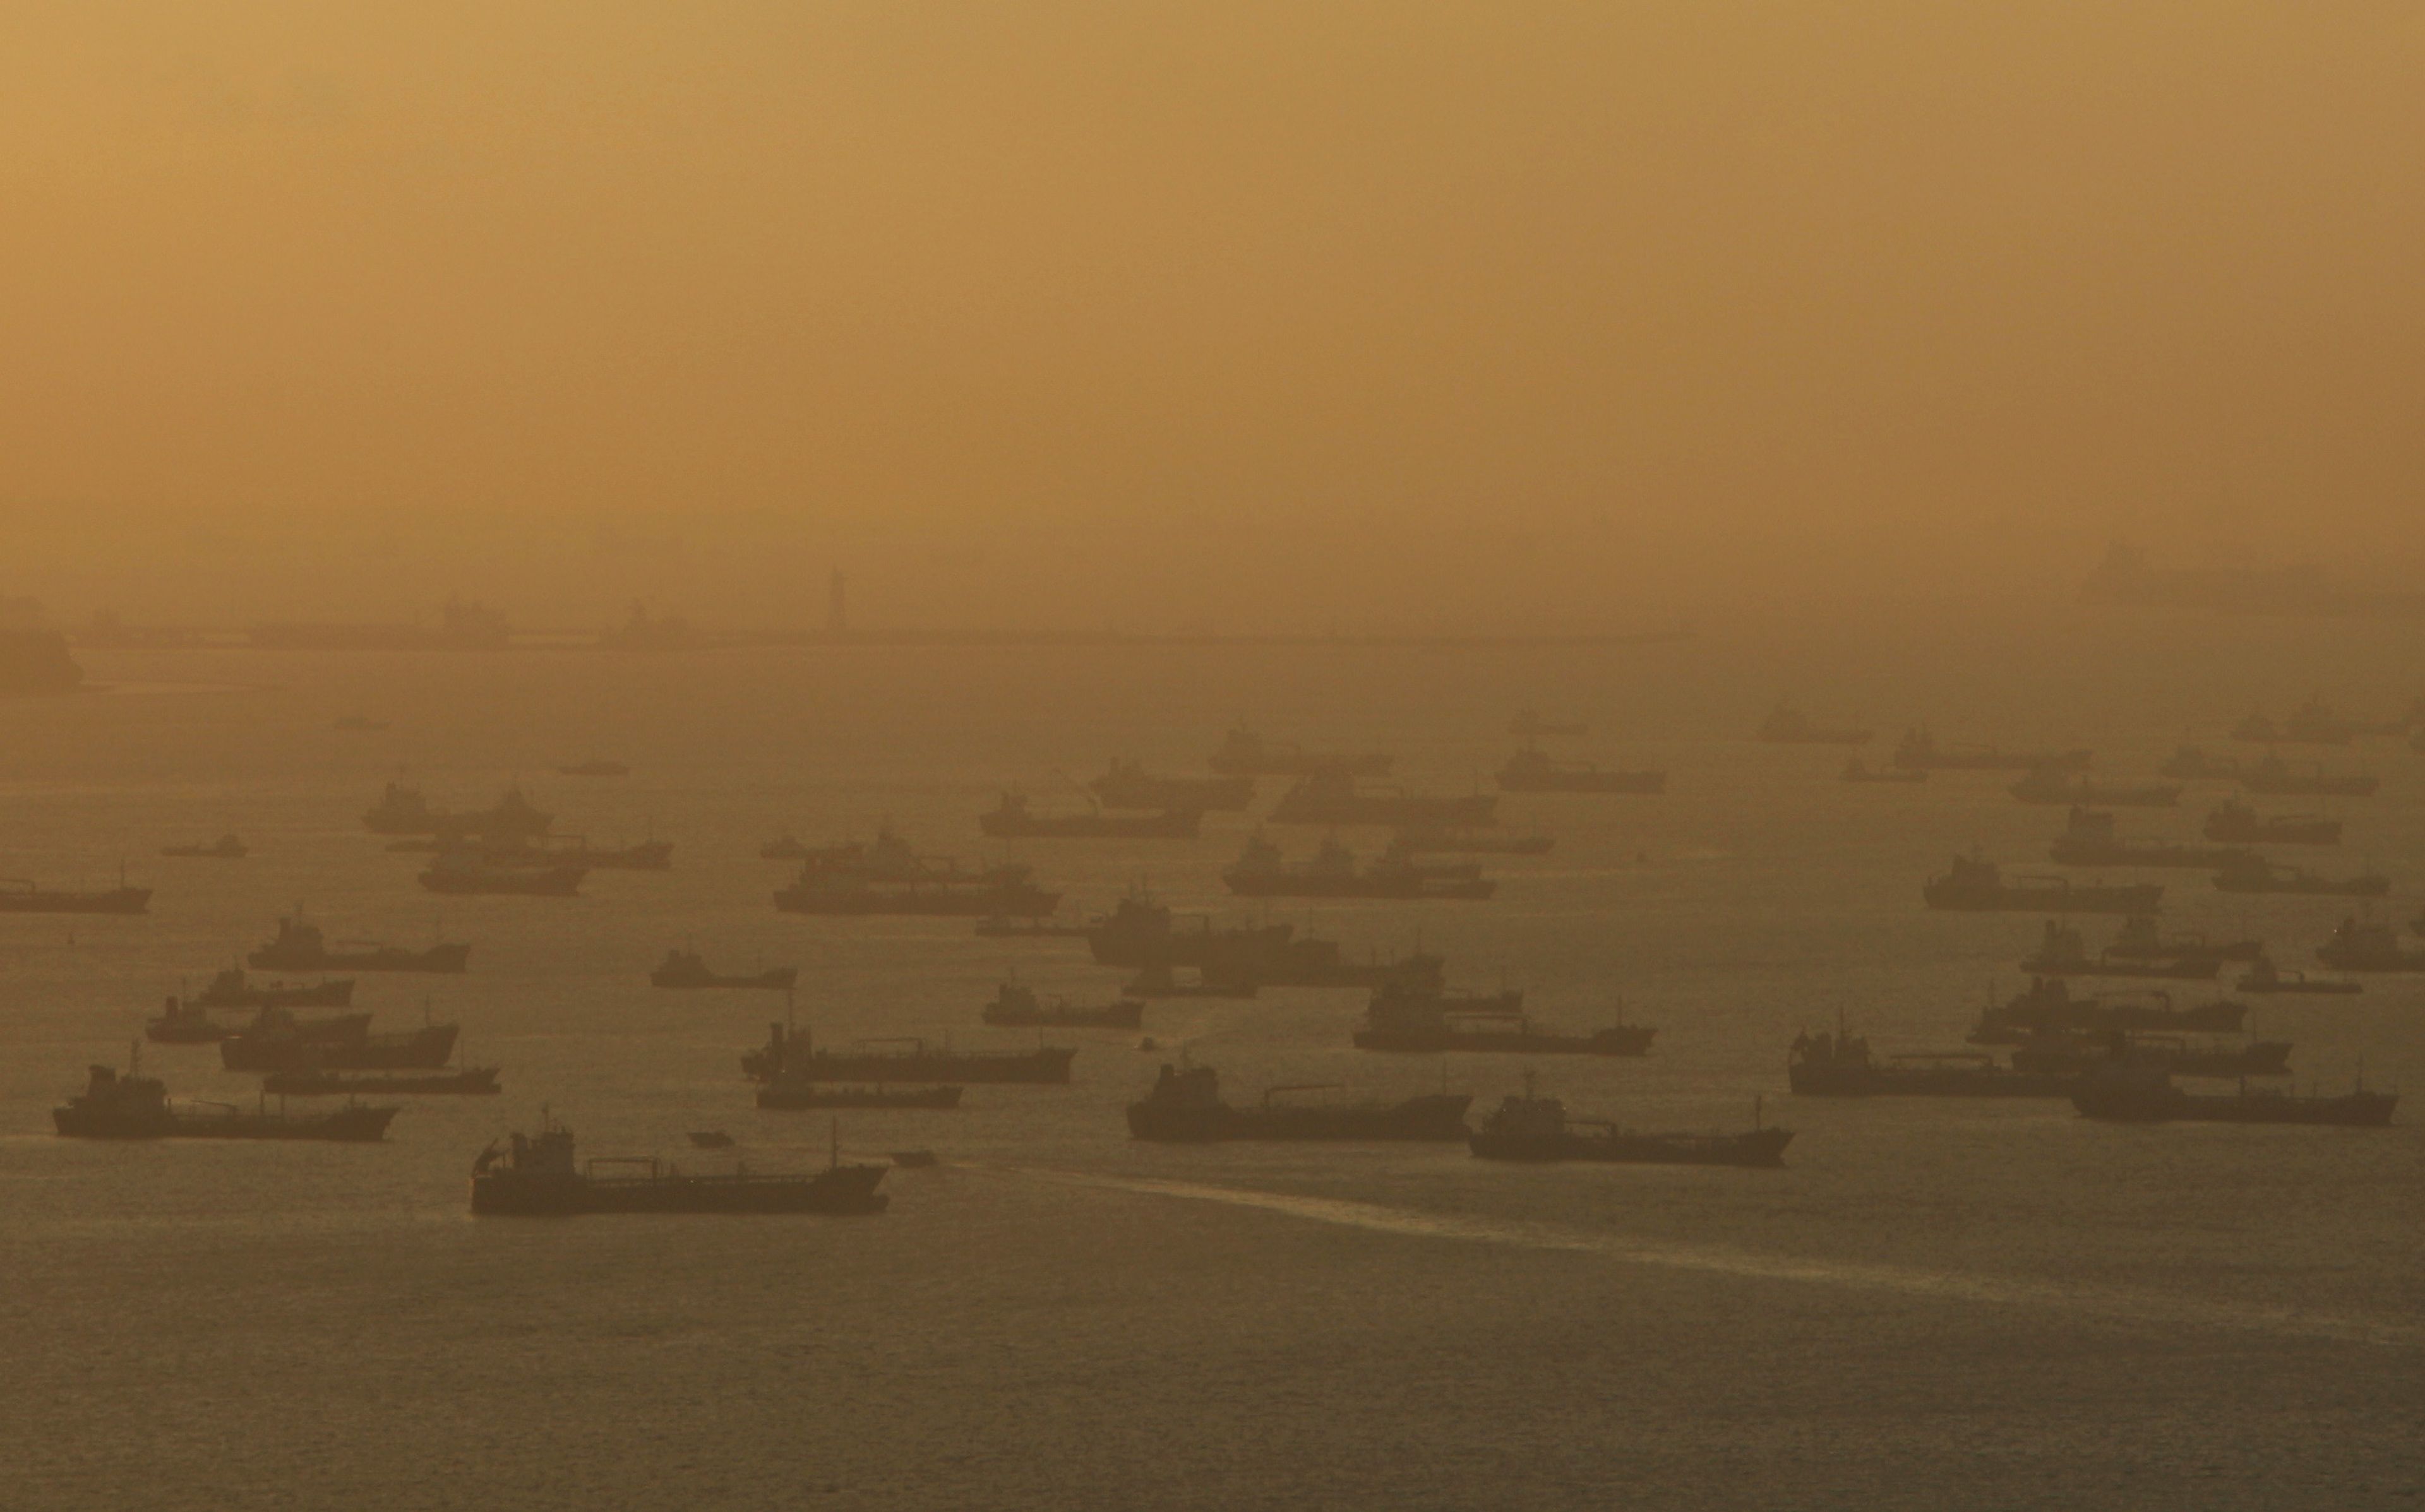 Superpetroleros esperando en fila para entrar en el puerto de Singapur